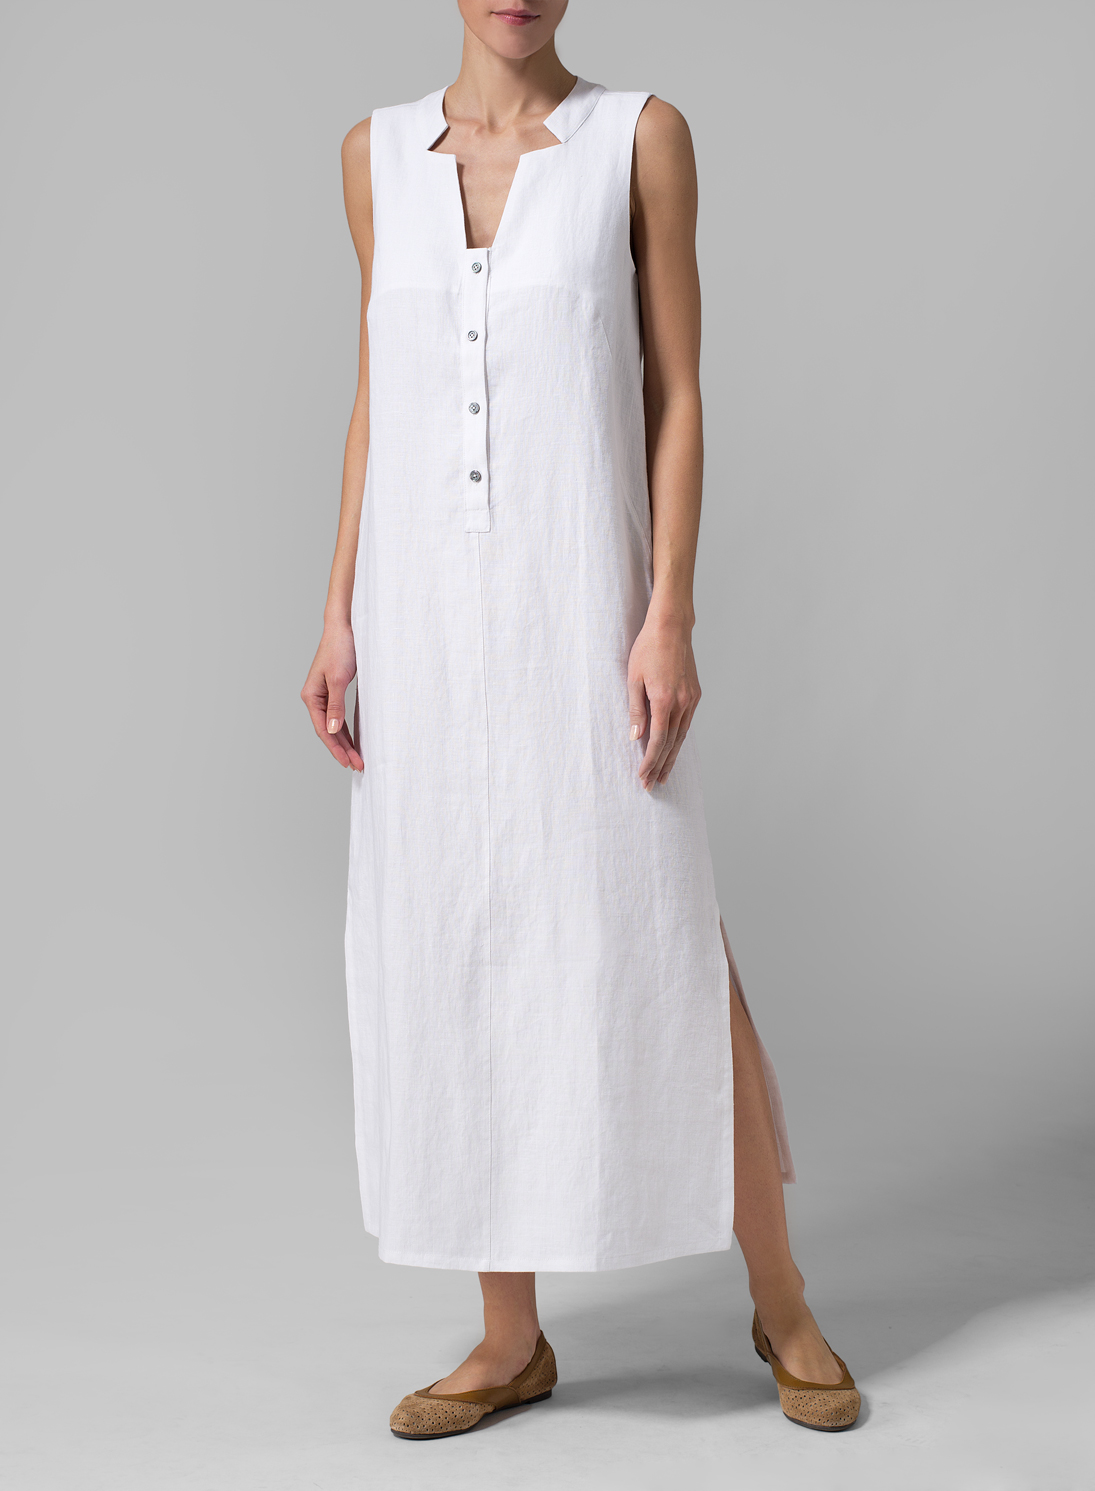 White Linen Sleeveless Slip-on Dress - Plus Size